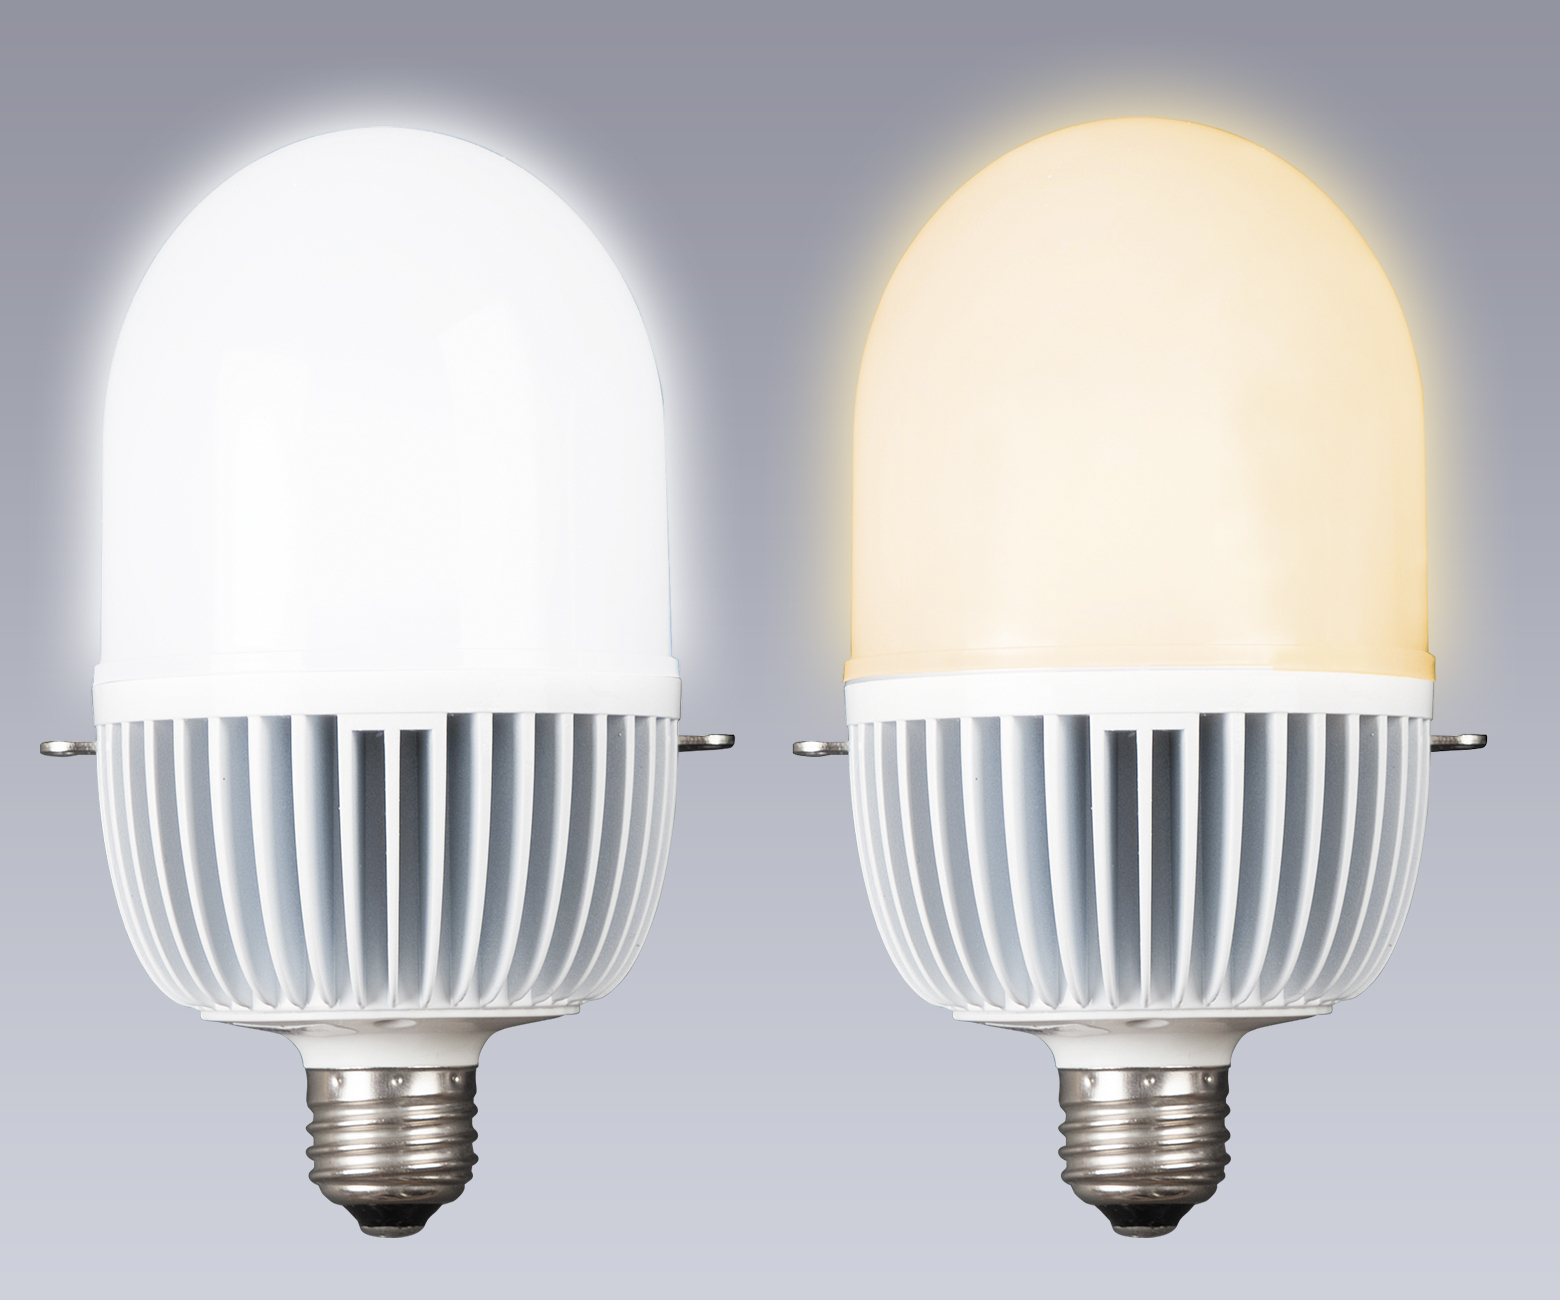 「水銀灯型LEDランプ」全方向タイプ発売のお知らせ - 記事詳細｜Infoseekニュース